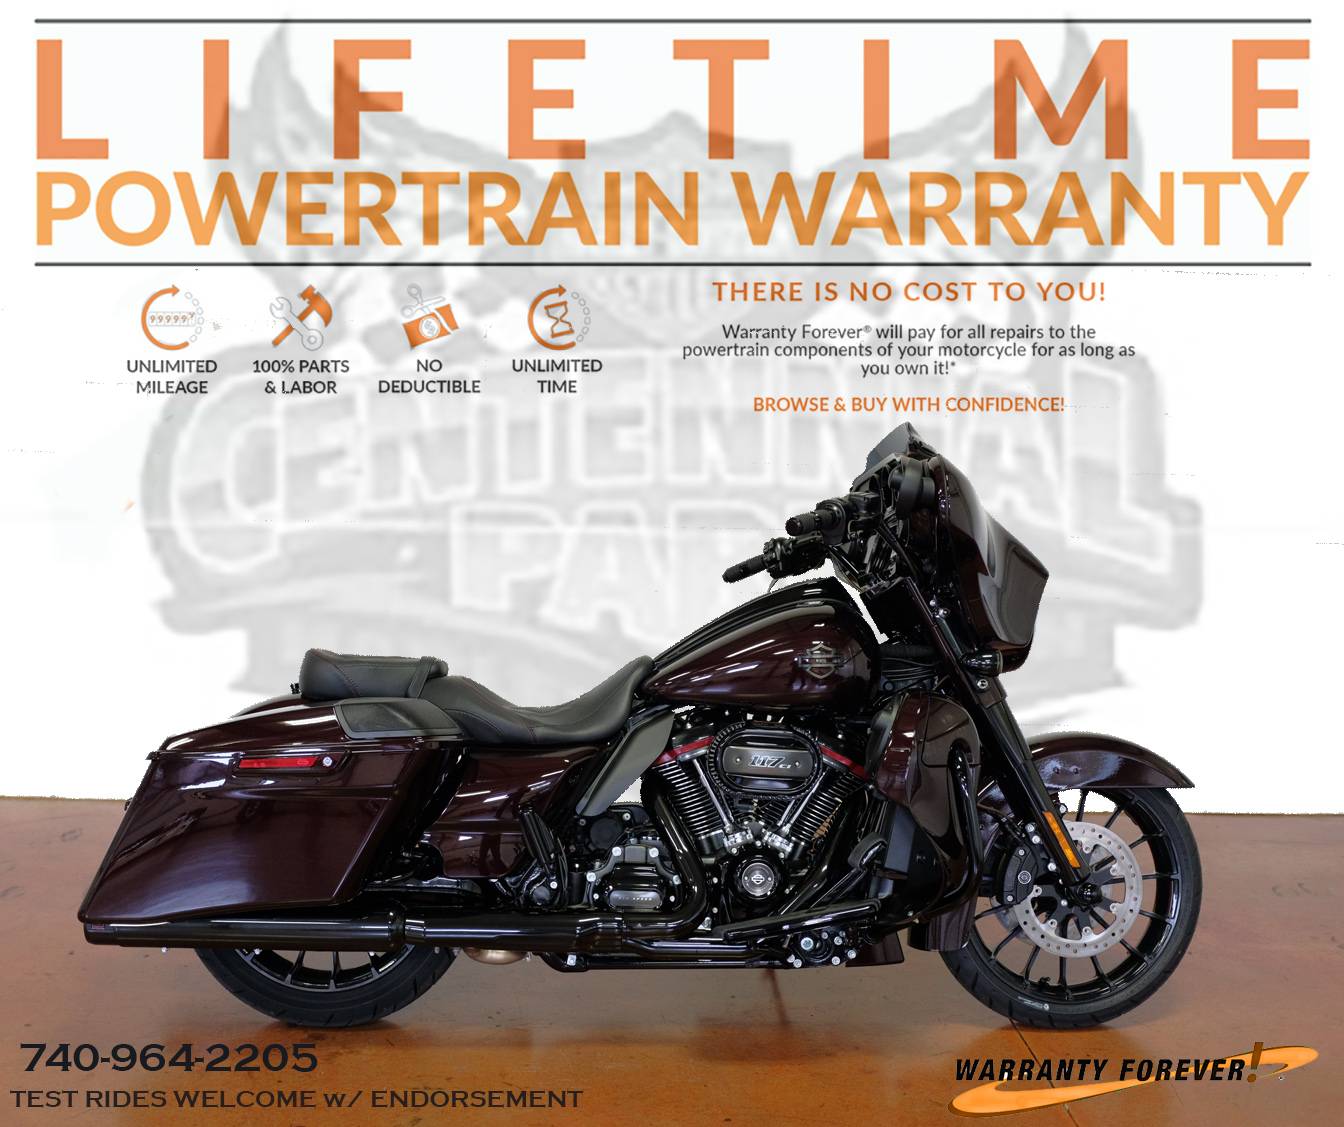  2019  Harley  Davidson  Parts Catalog  Pdf Reviewmotors co